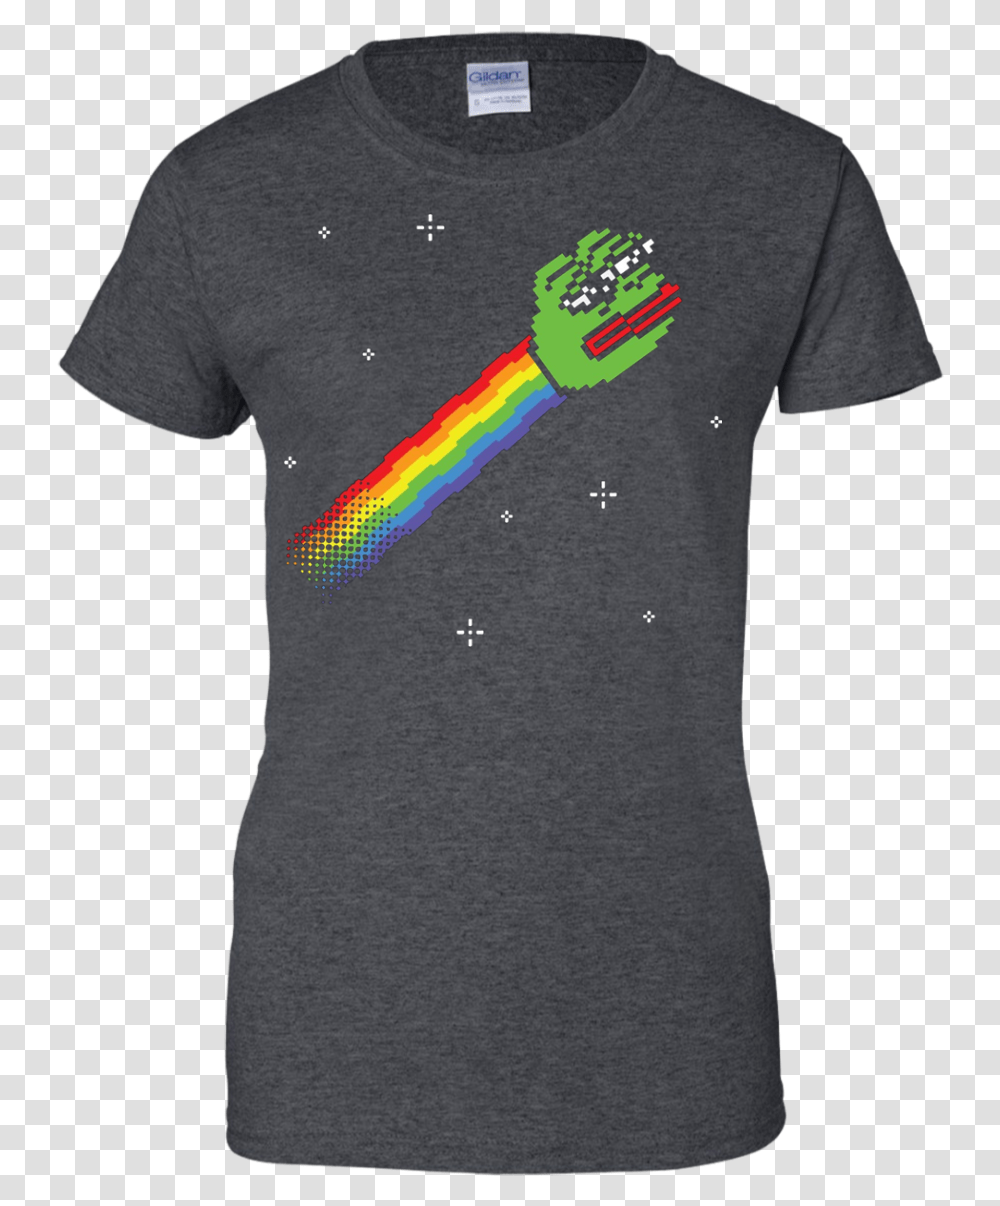 Nyan Pepe The Frog T Shirt Dank Memes Meme Sad Shirt Hei Hei Shirt, Apparel Transparent Png